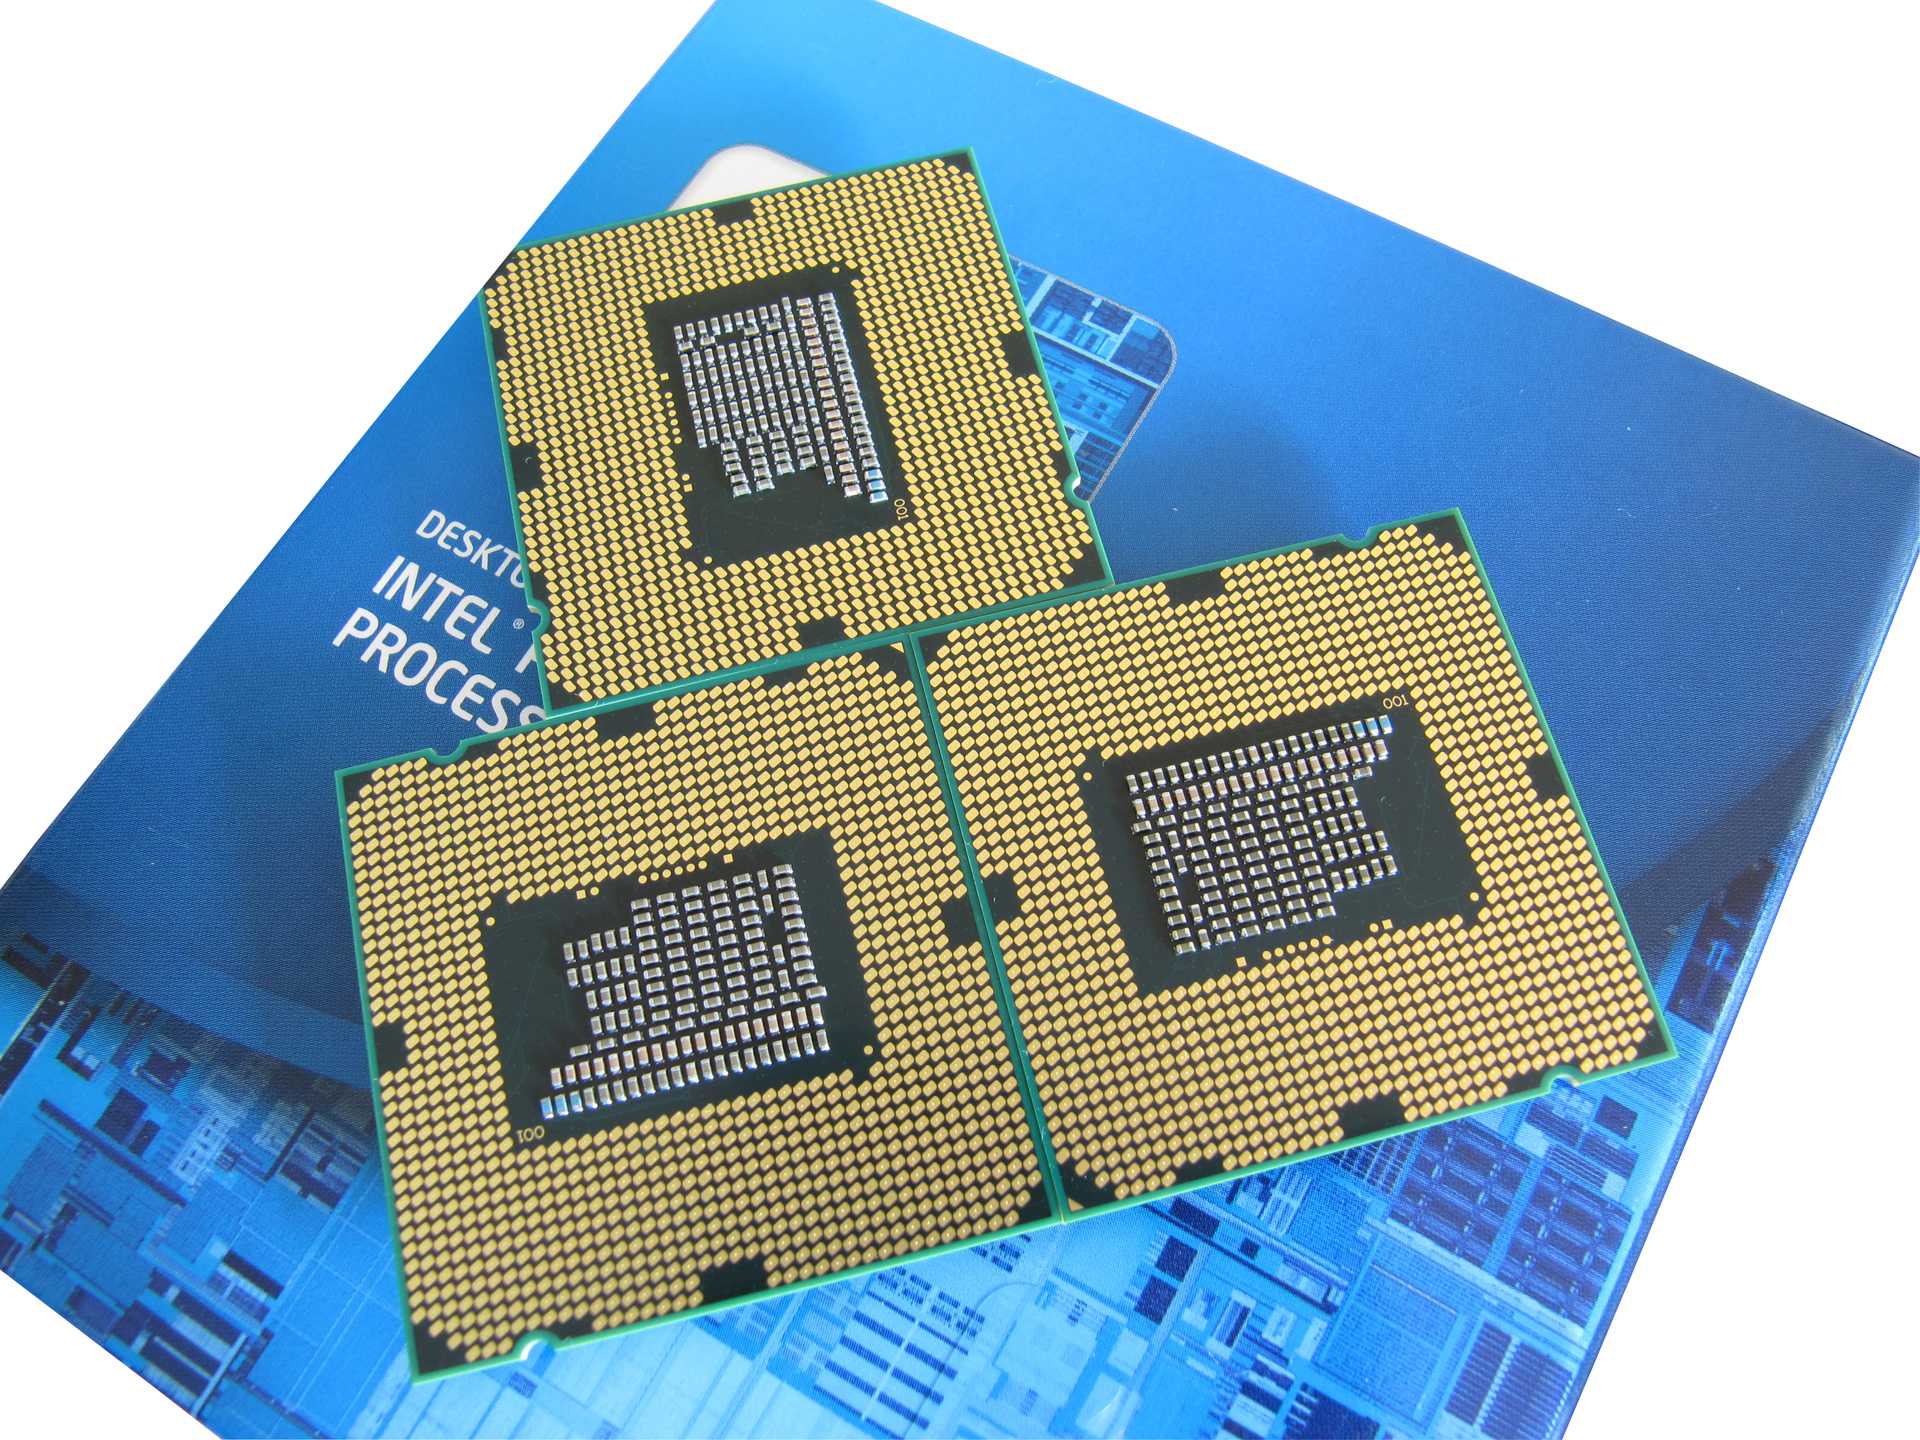 Нормальные процессоры для игр. Intel Pentium g620. Pentium 5405u. Intel Pentium игровой процессор. Процессор Intel Pentium 5405u класса Gold.